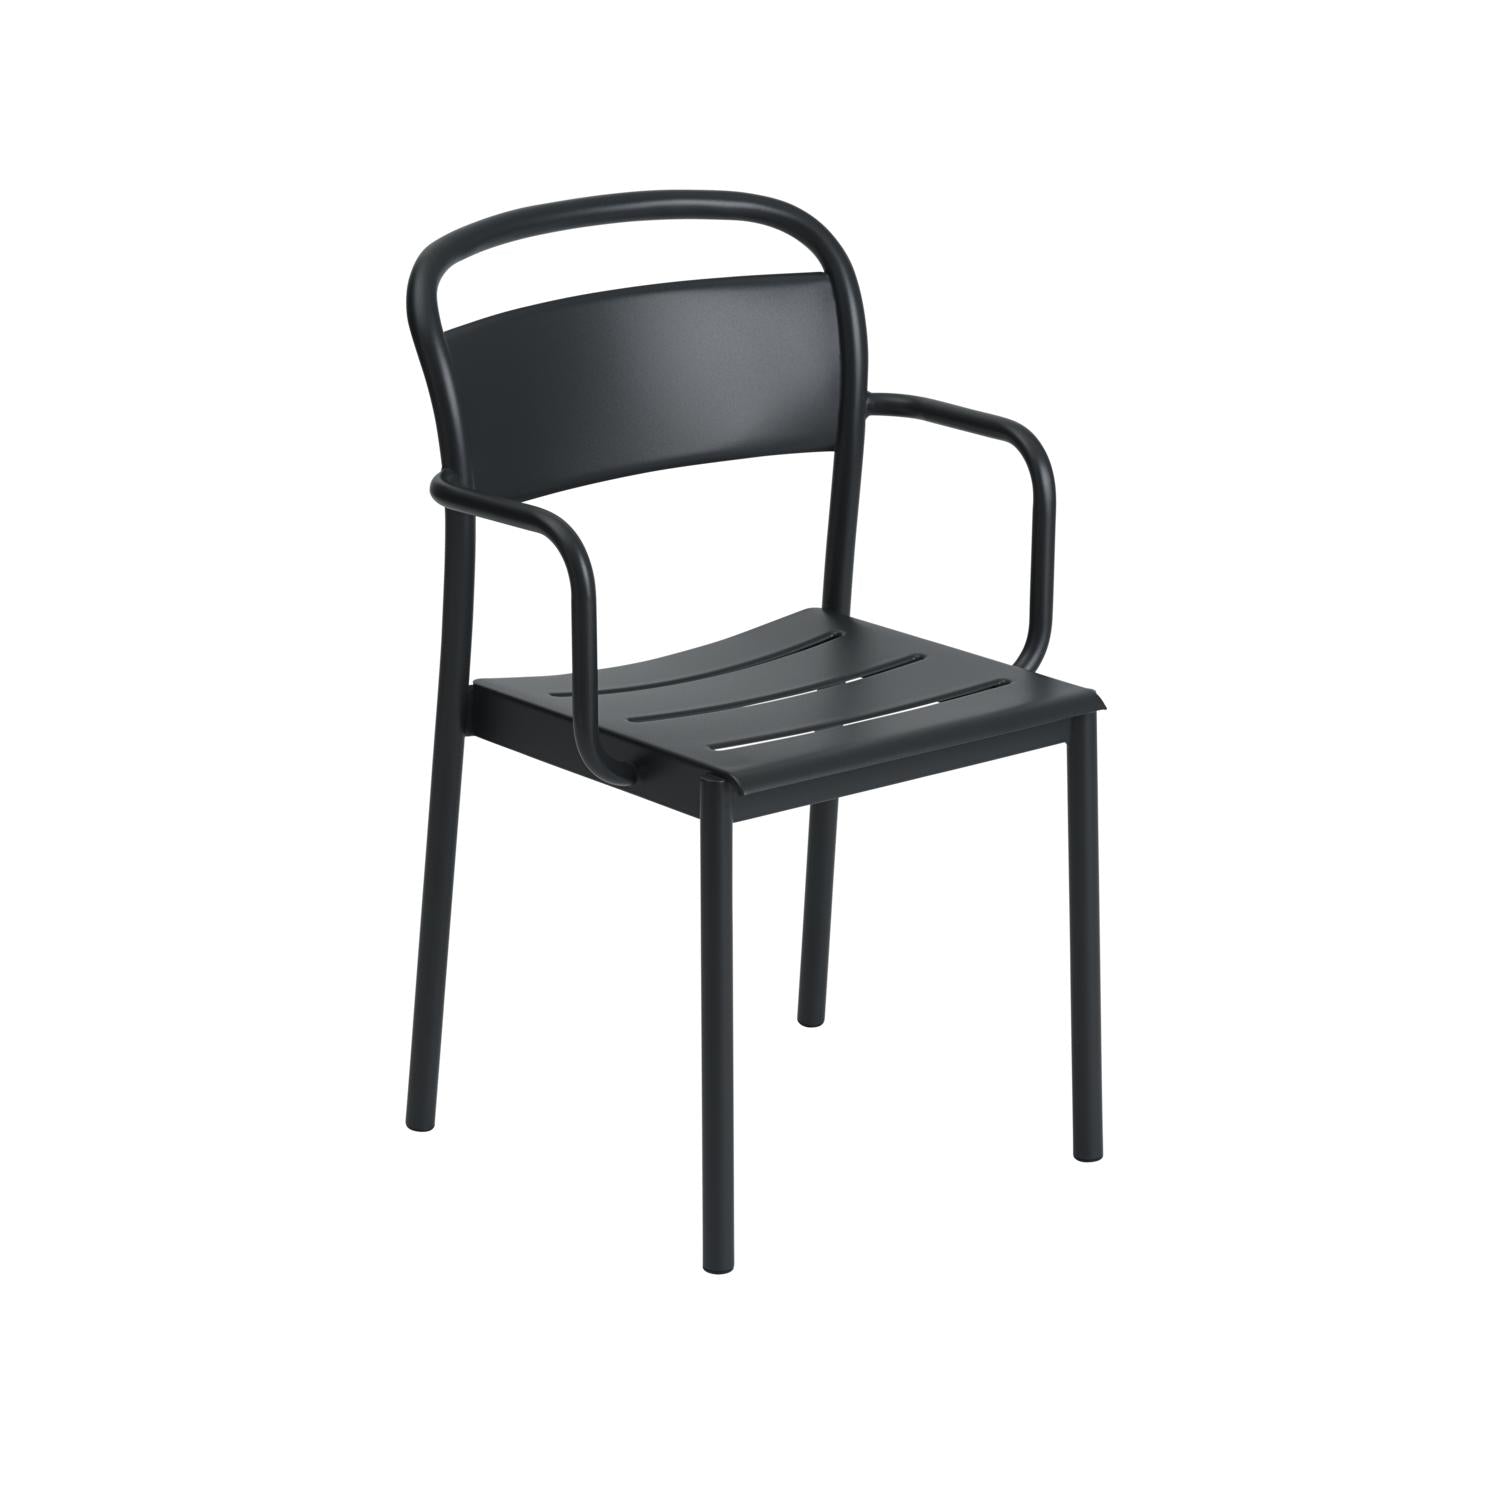 Muuto Lineair stalen fauteuil, zwart